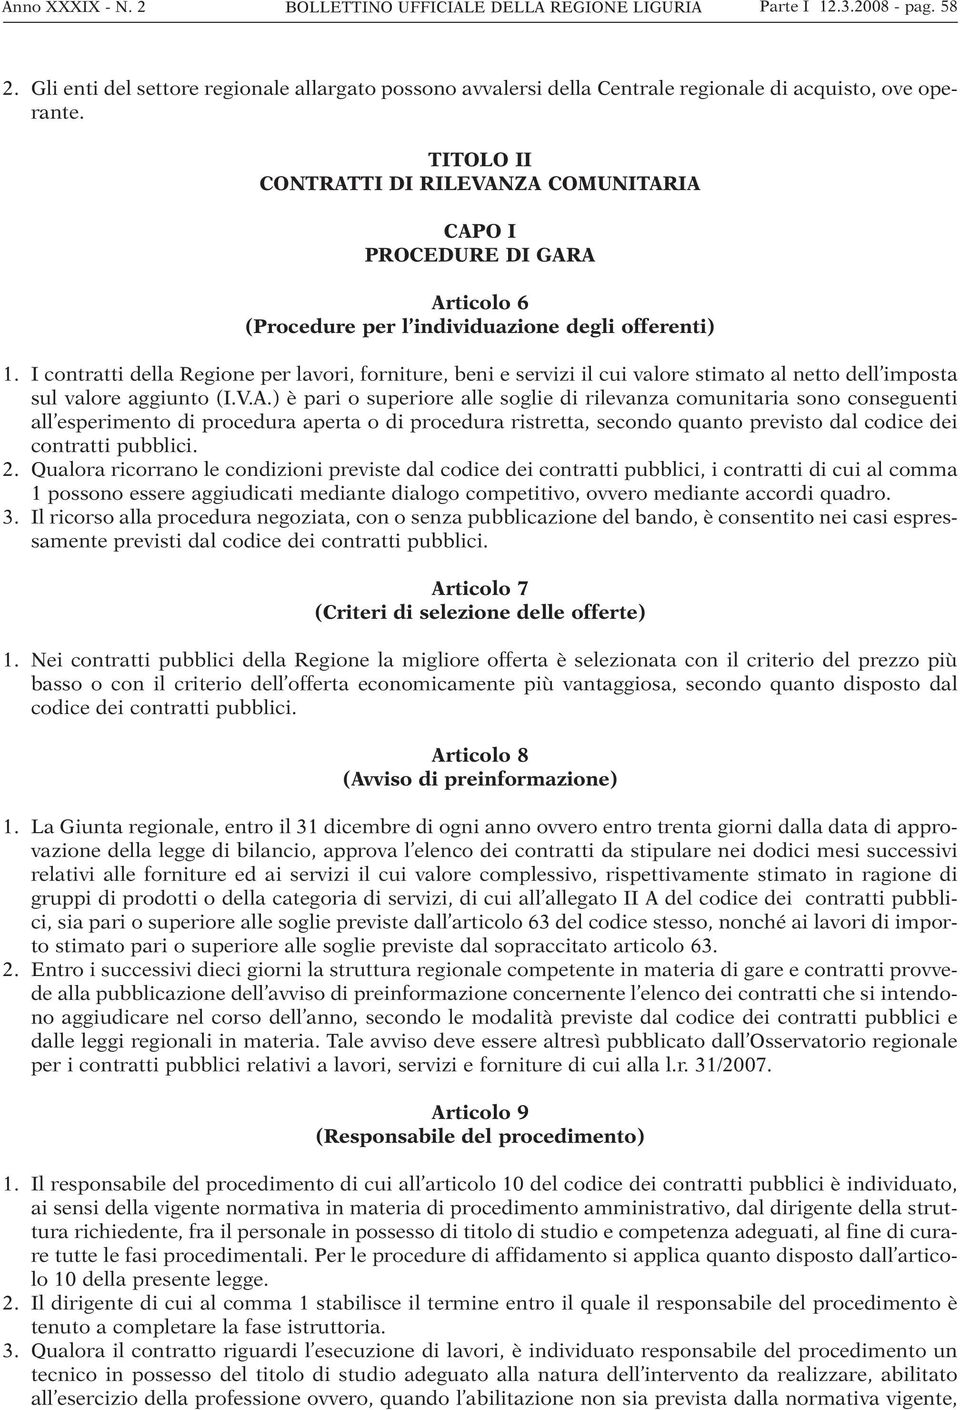 TITOLO II CONTRATTI DI RILEVANZA COMUNITARIA CAPO I PROCEDURE DI GARA Articolo 6 (Procedure per l individuazione degli offerenti) 1.